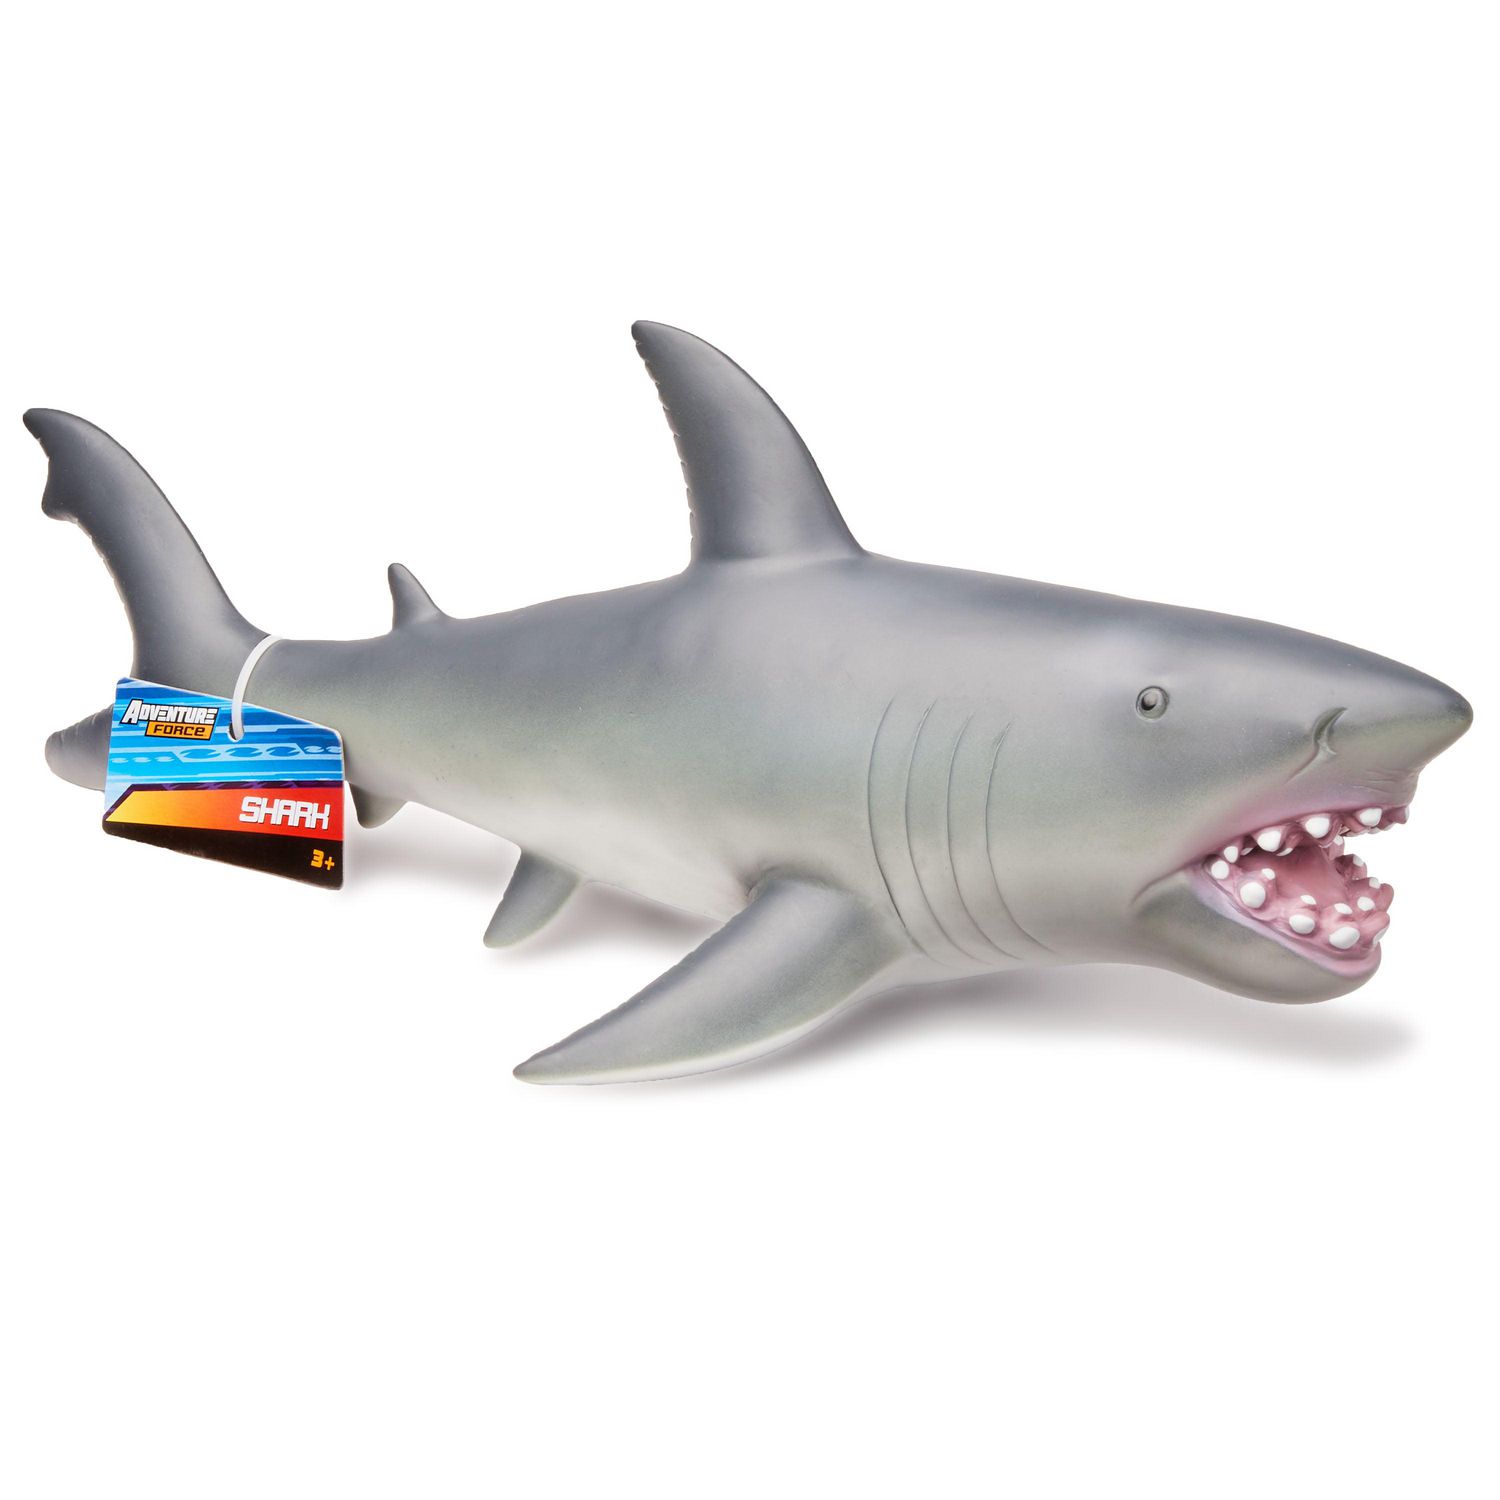 1 PC requin drôle créatif dessin animé grinçant jouet fournitures